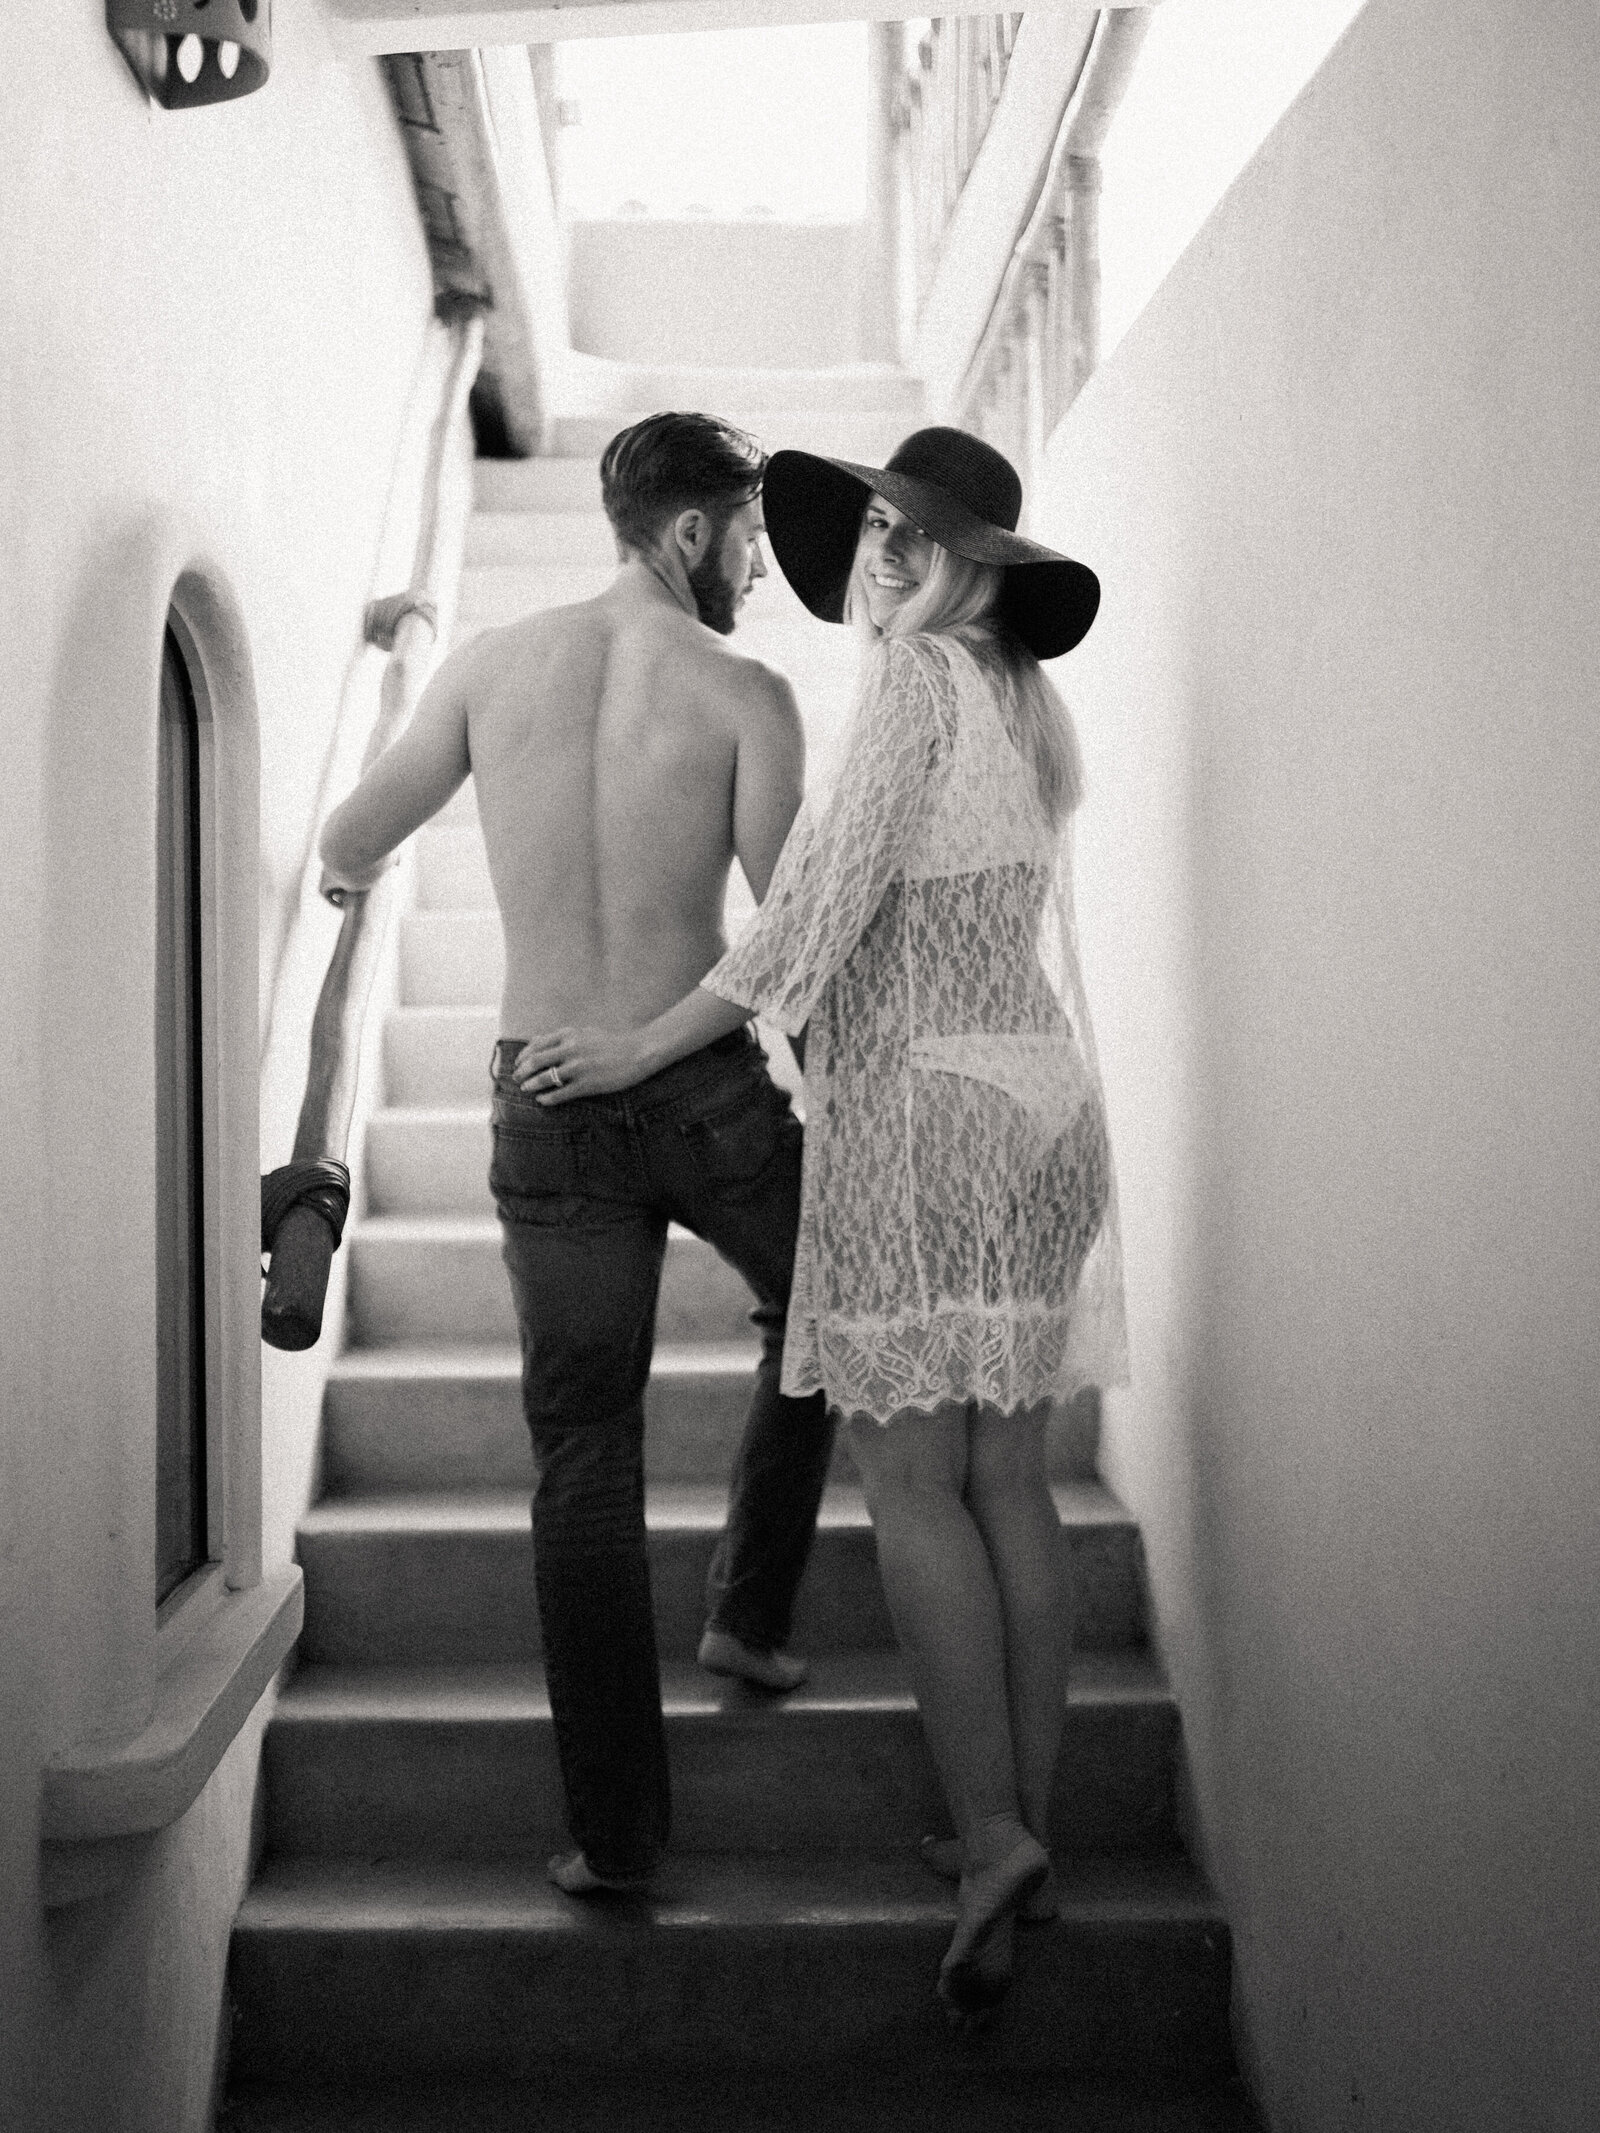 023-sean-cook-wedding-photography-mexico-couple-staircase